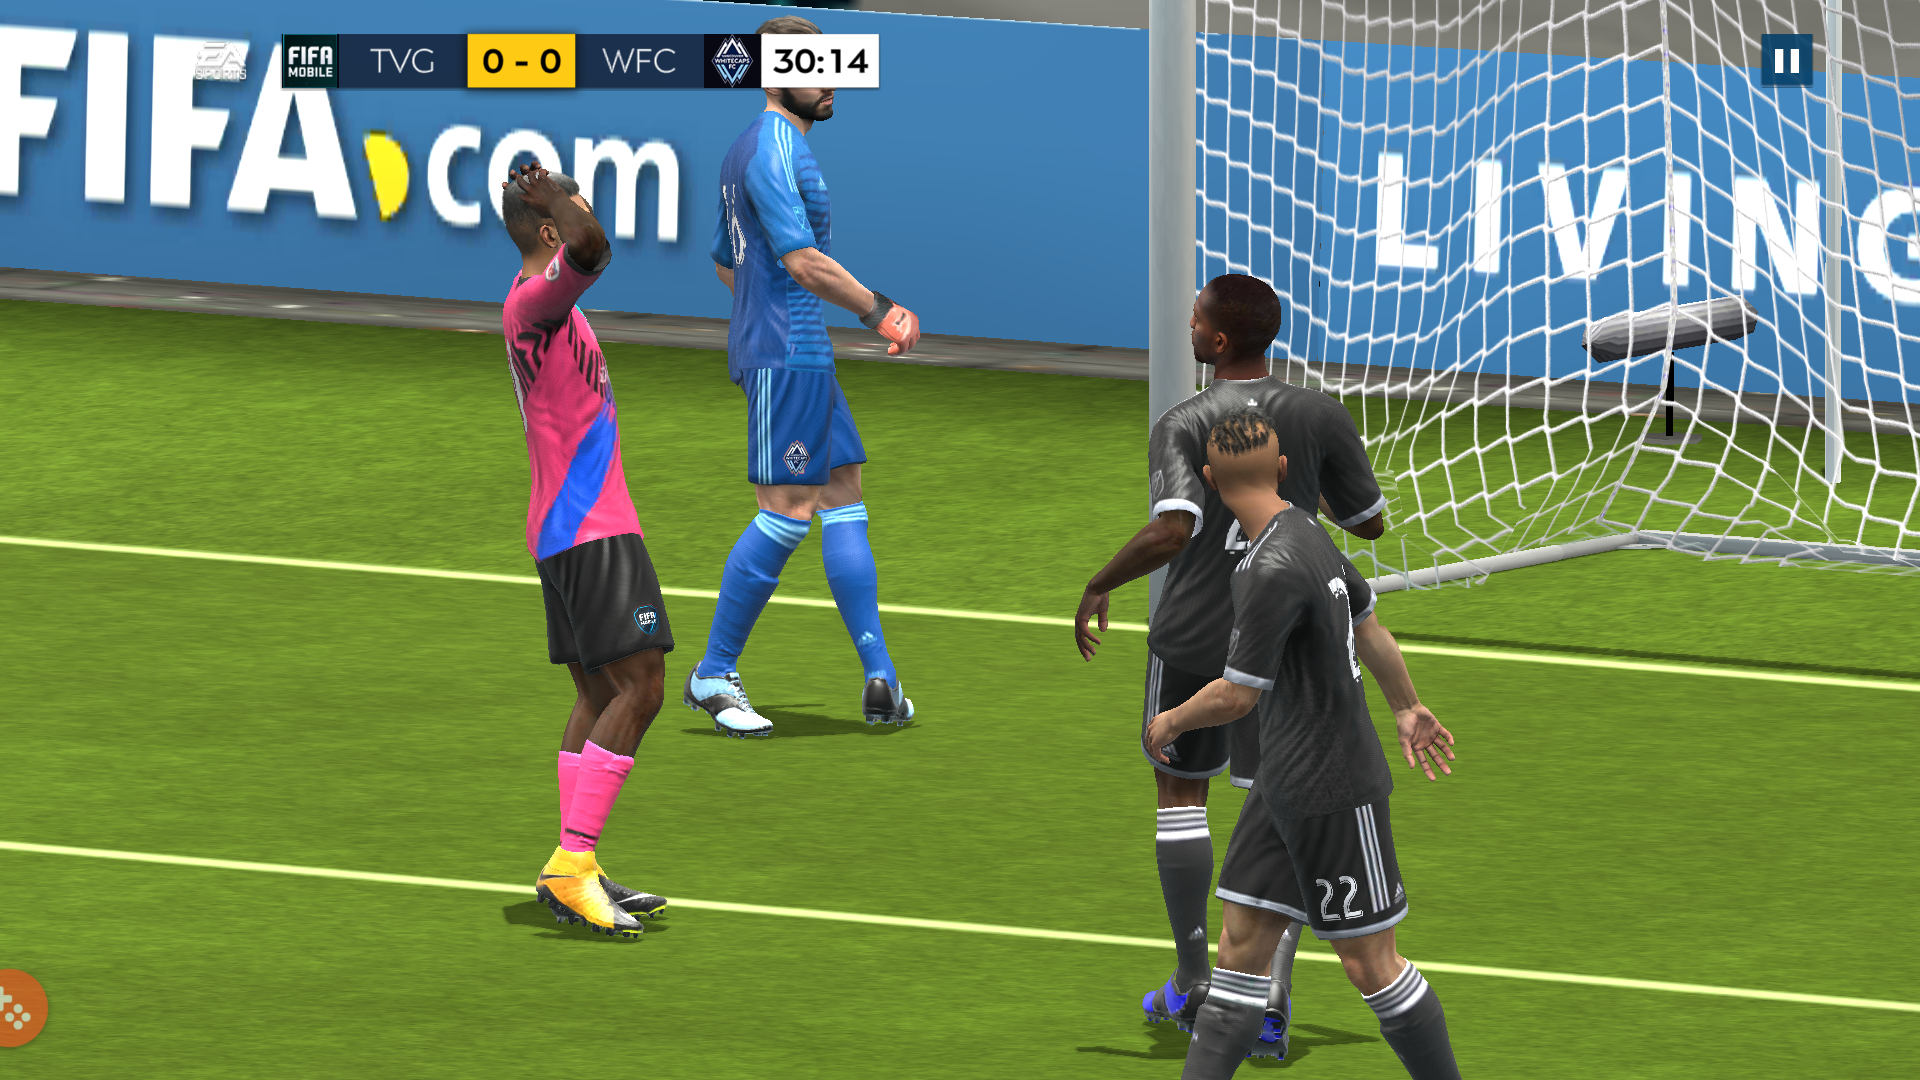 Nhanh tay tham gia
trả nghiệm sớm phiên bản Beta của tựa game FIFA 2020 Mobile